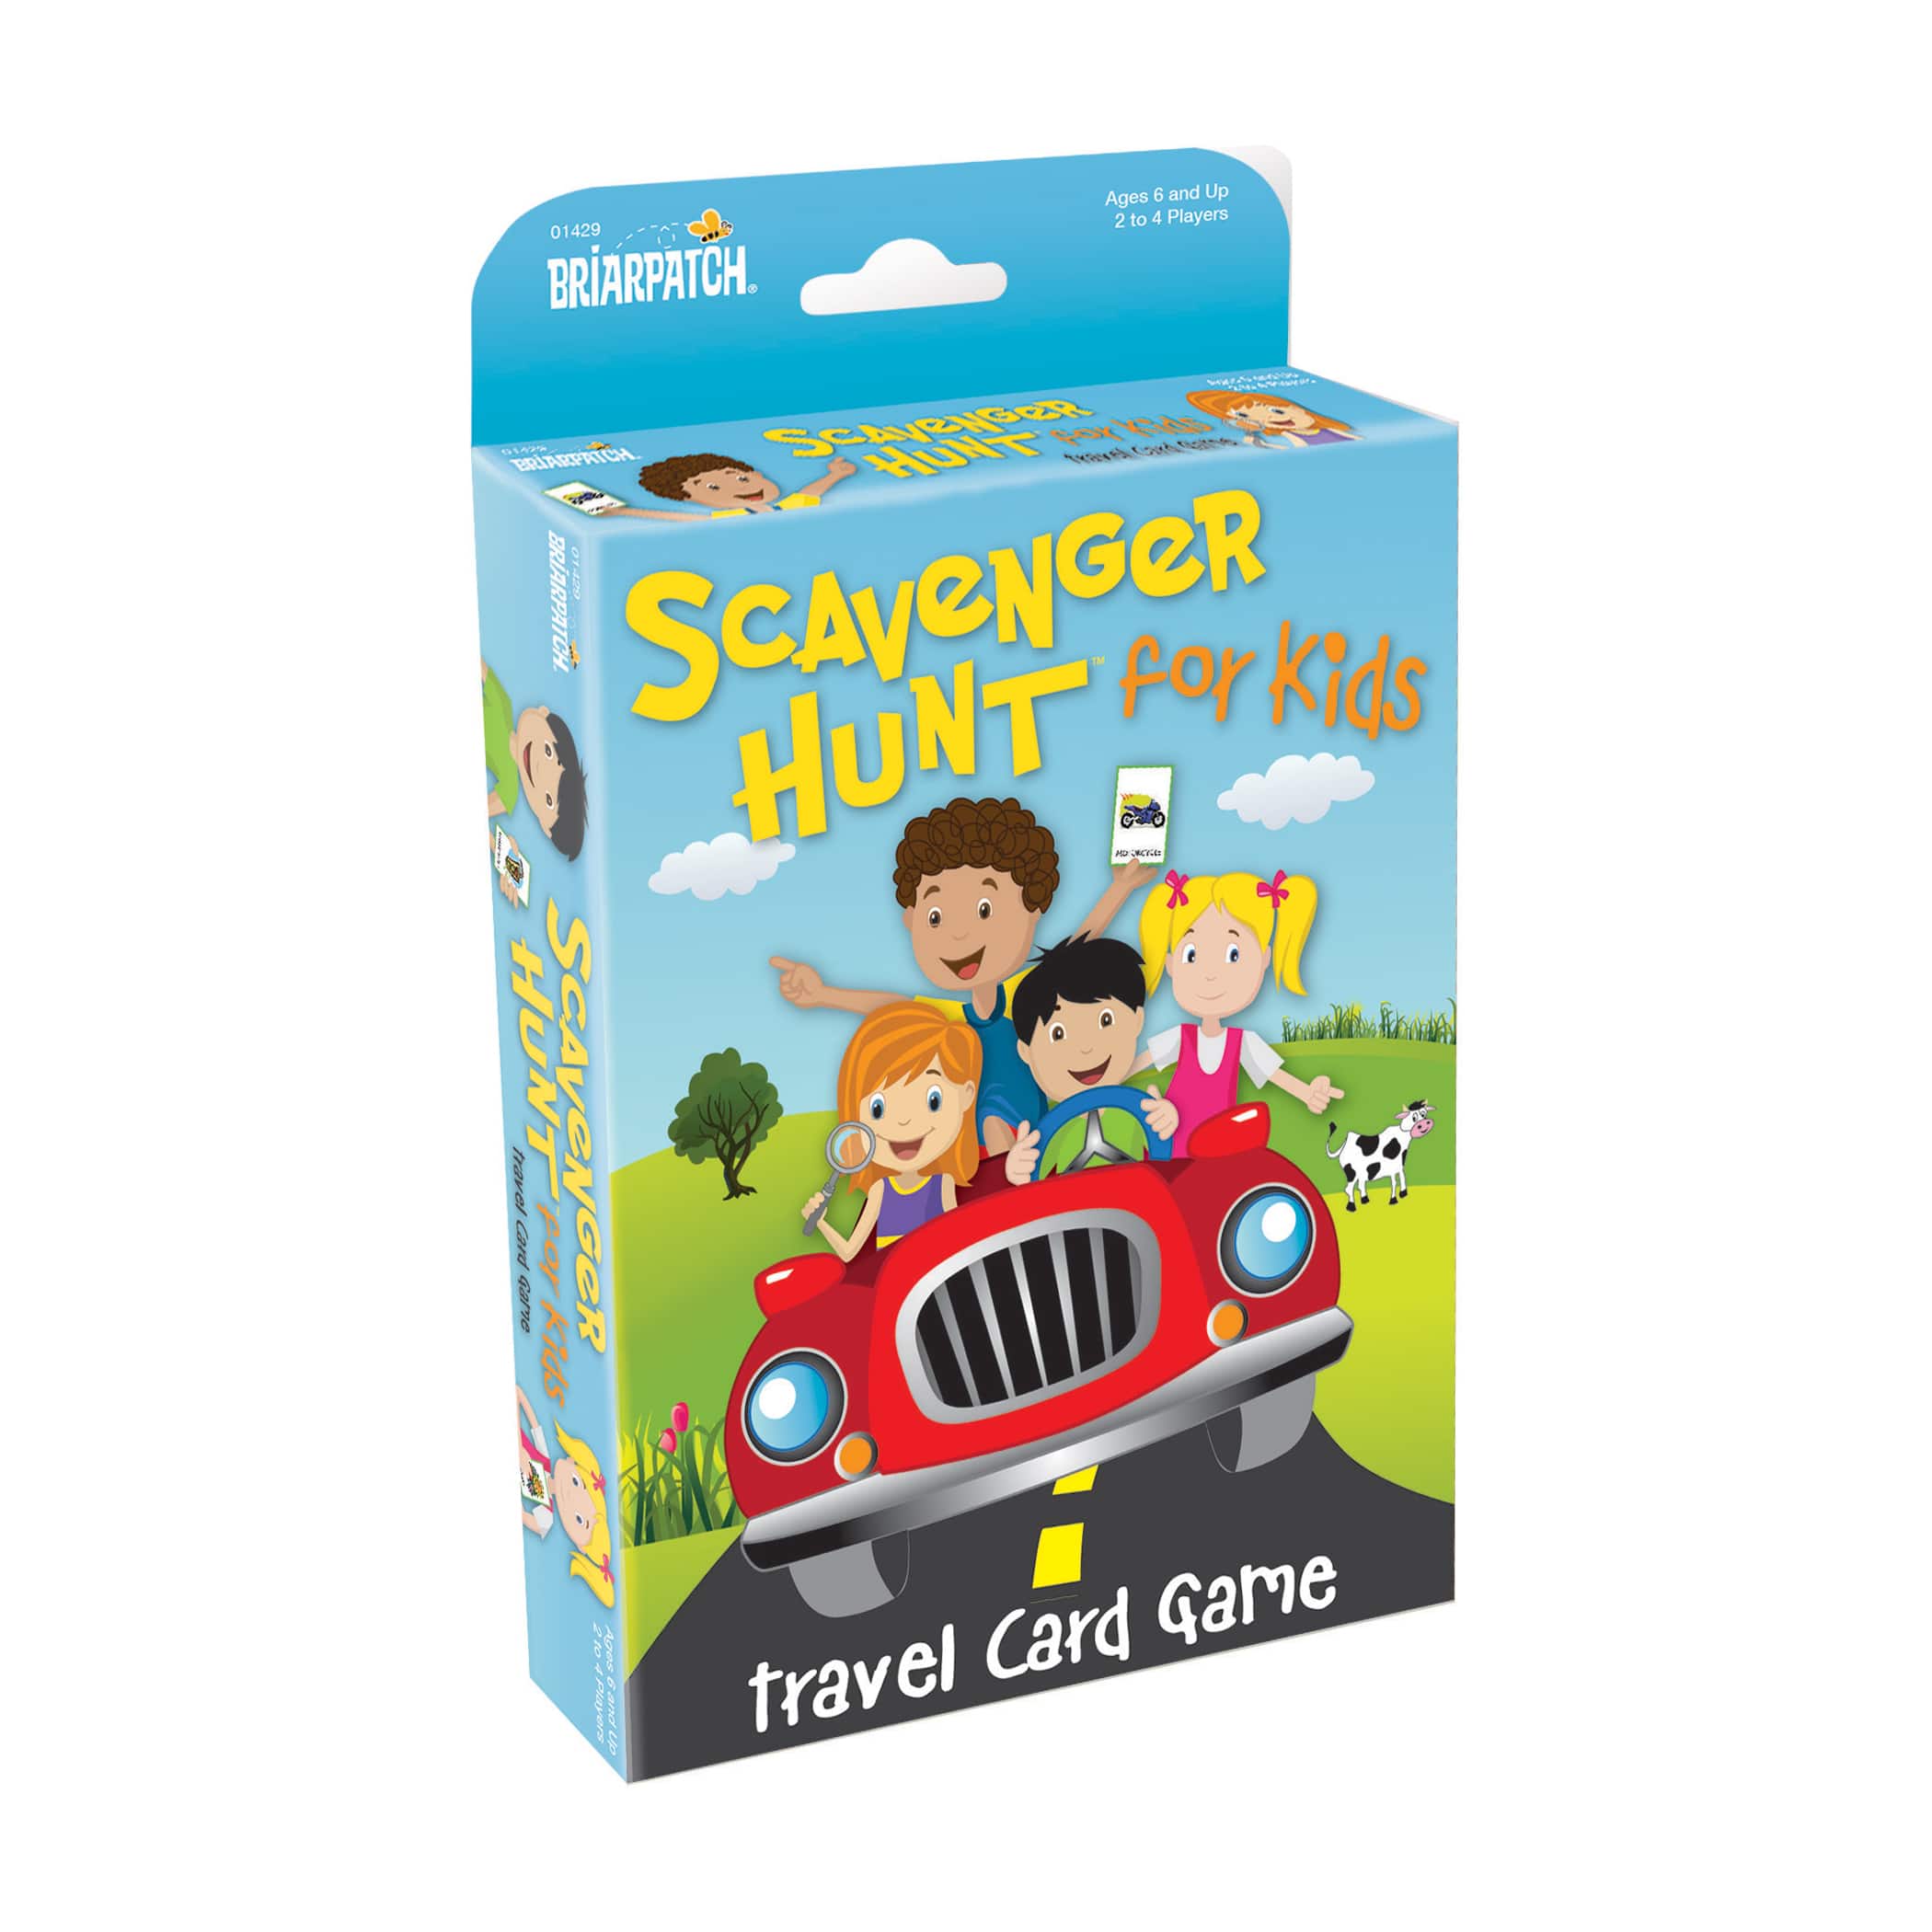 Scavenger Hunt For Kids - Travel Card Game